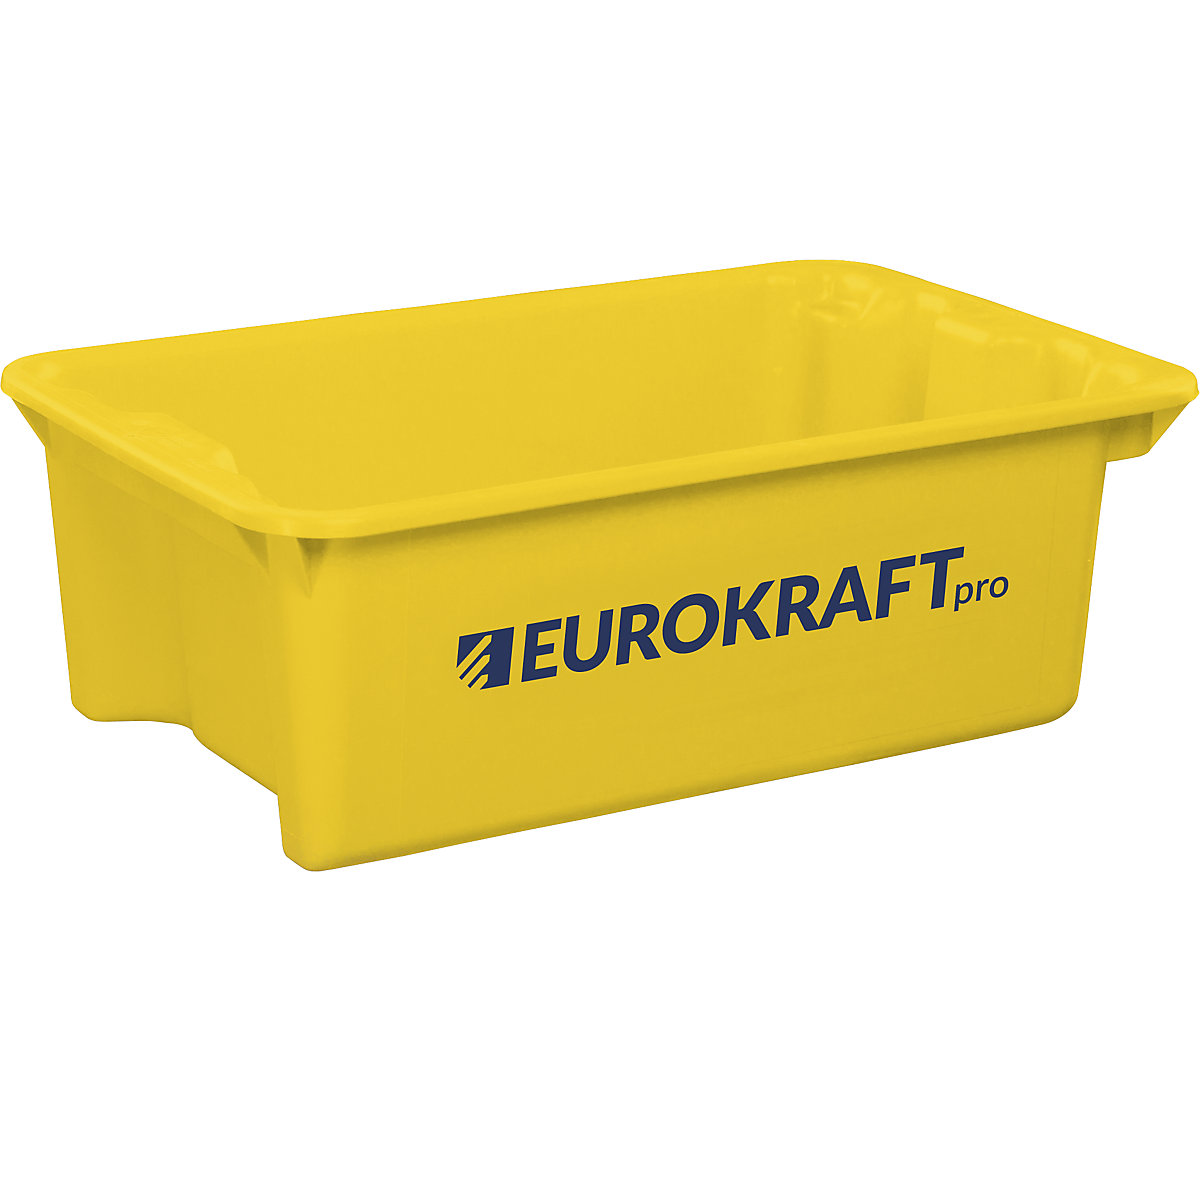 EUROKRAFTpro – Otočná stohovací nádoba z polypropylenu vhodného pro potraviny, obsah 34 litrů, bal.j. 3 ks, stěny a dno plné, žlutá